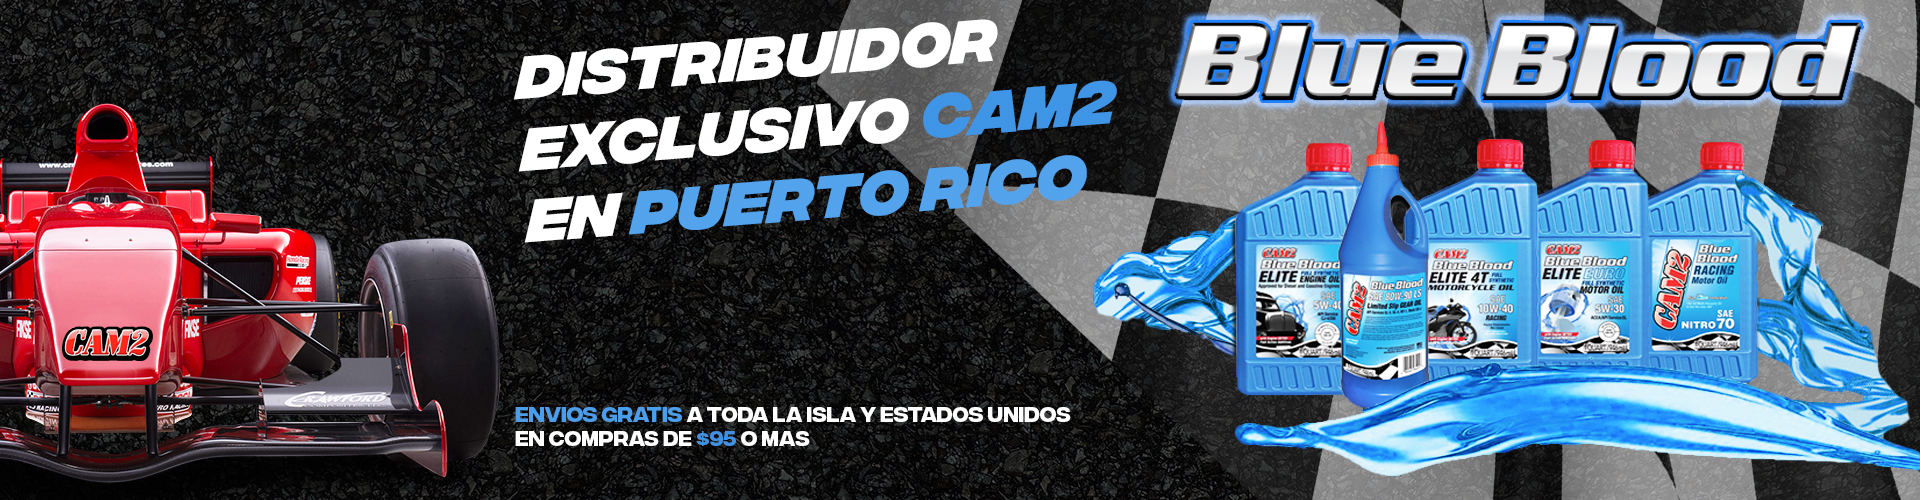 Distribuidor exclusivo CAM2 en puerto rico Mayaguez – LUBRICANTES – FLUIDOS – BLUE BLOOD – ACEITE PARA MOTOR